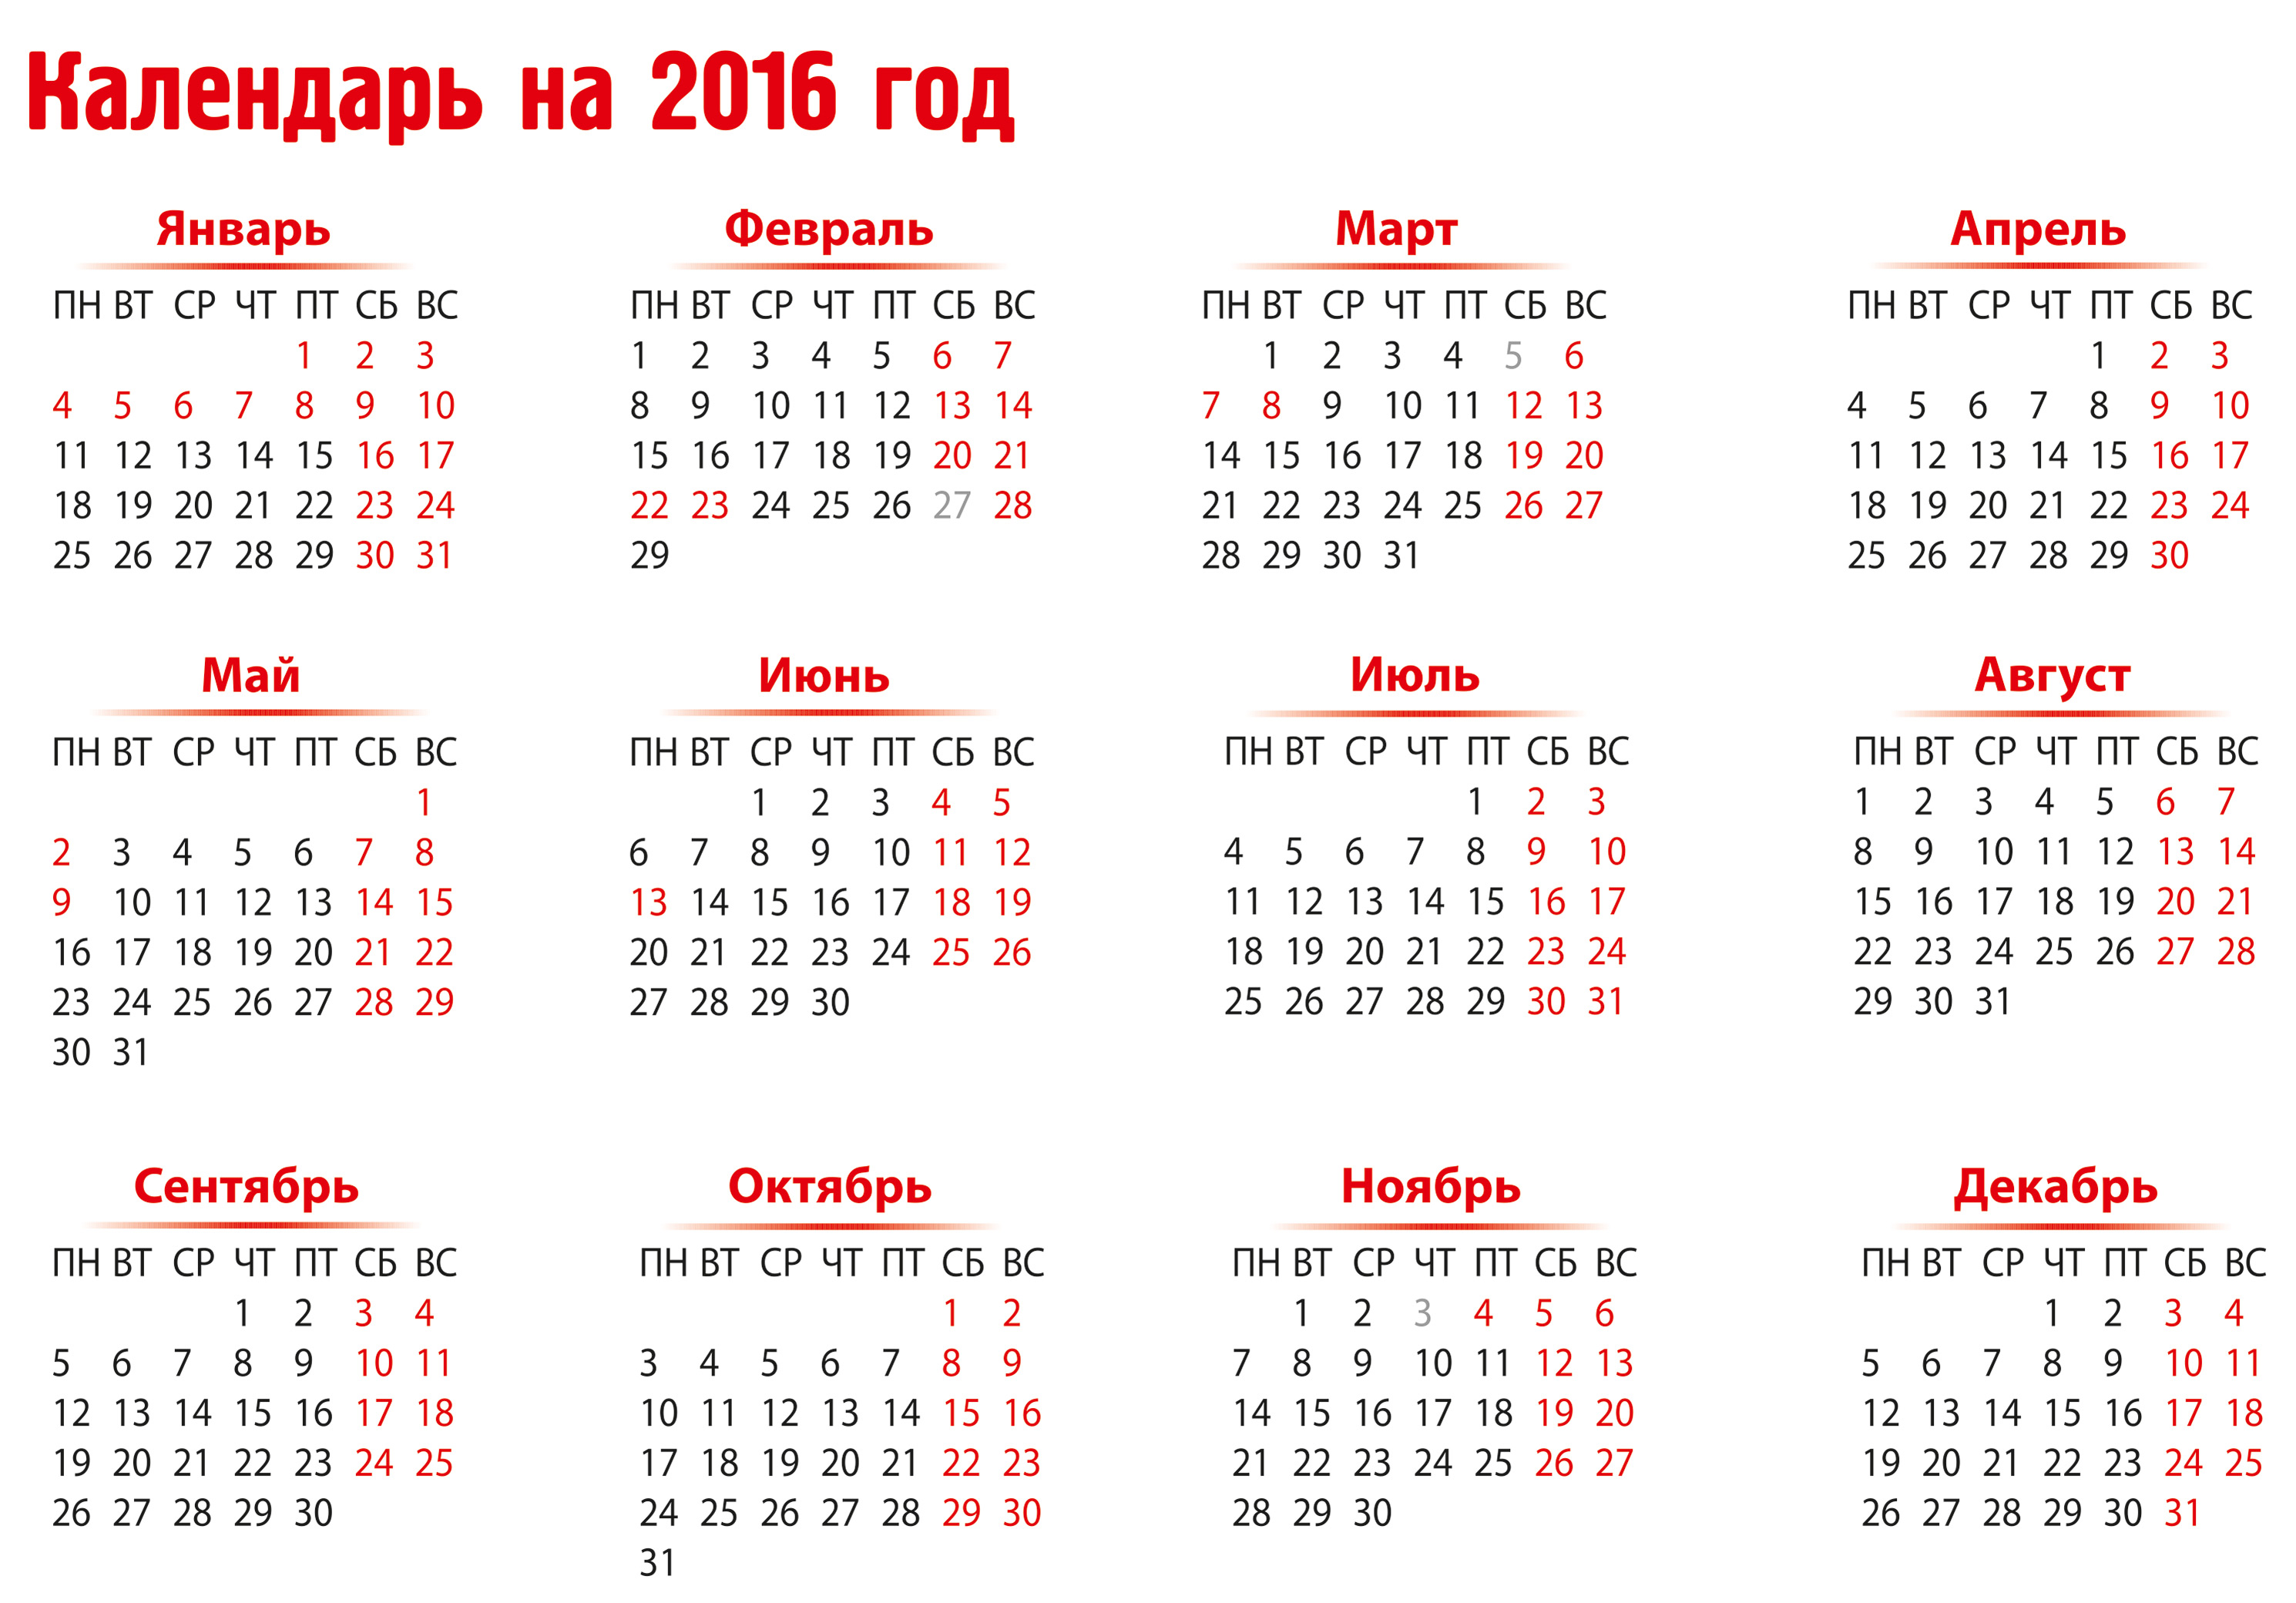 2017 год как работаем. Календарь 2016 года. Календарь 2016 года по месяцам. Праздники в календаре 2016 года. Календарь на 2016 год с праздниками и выходными.